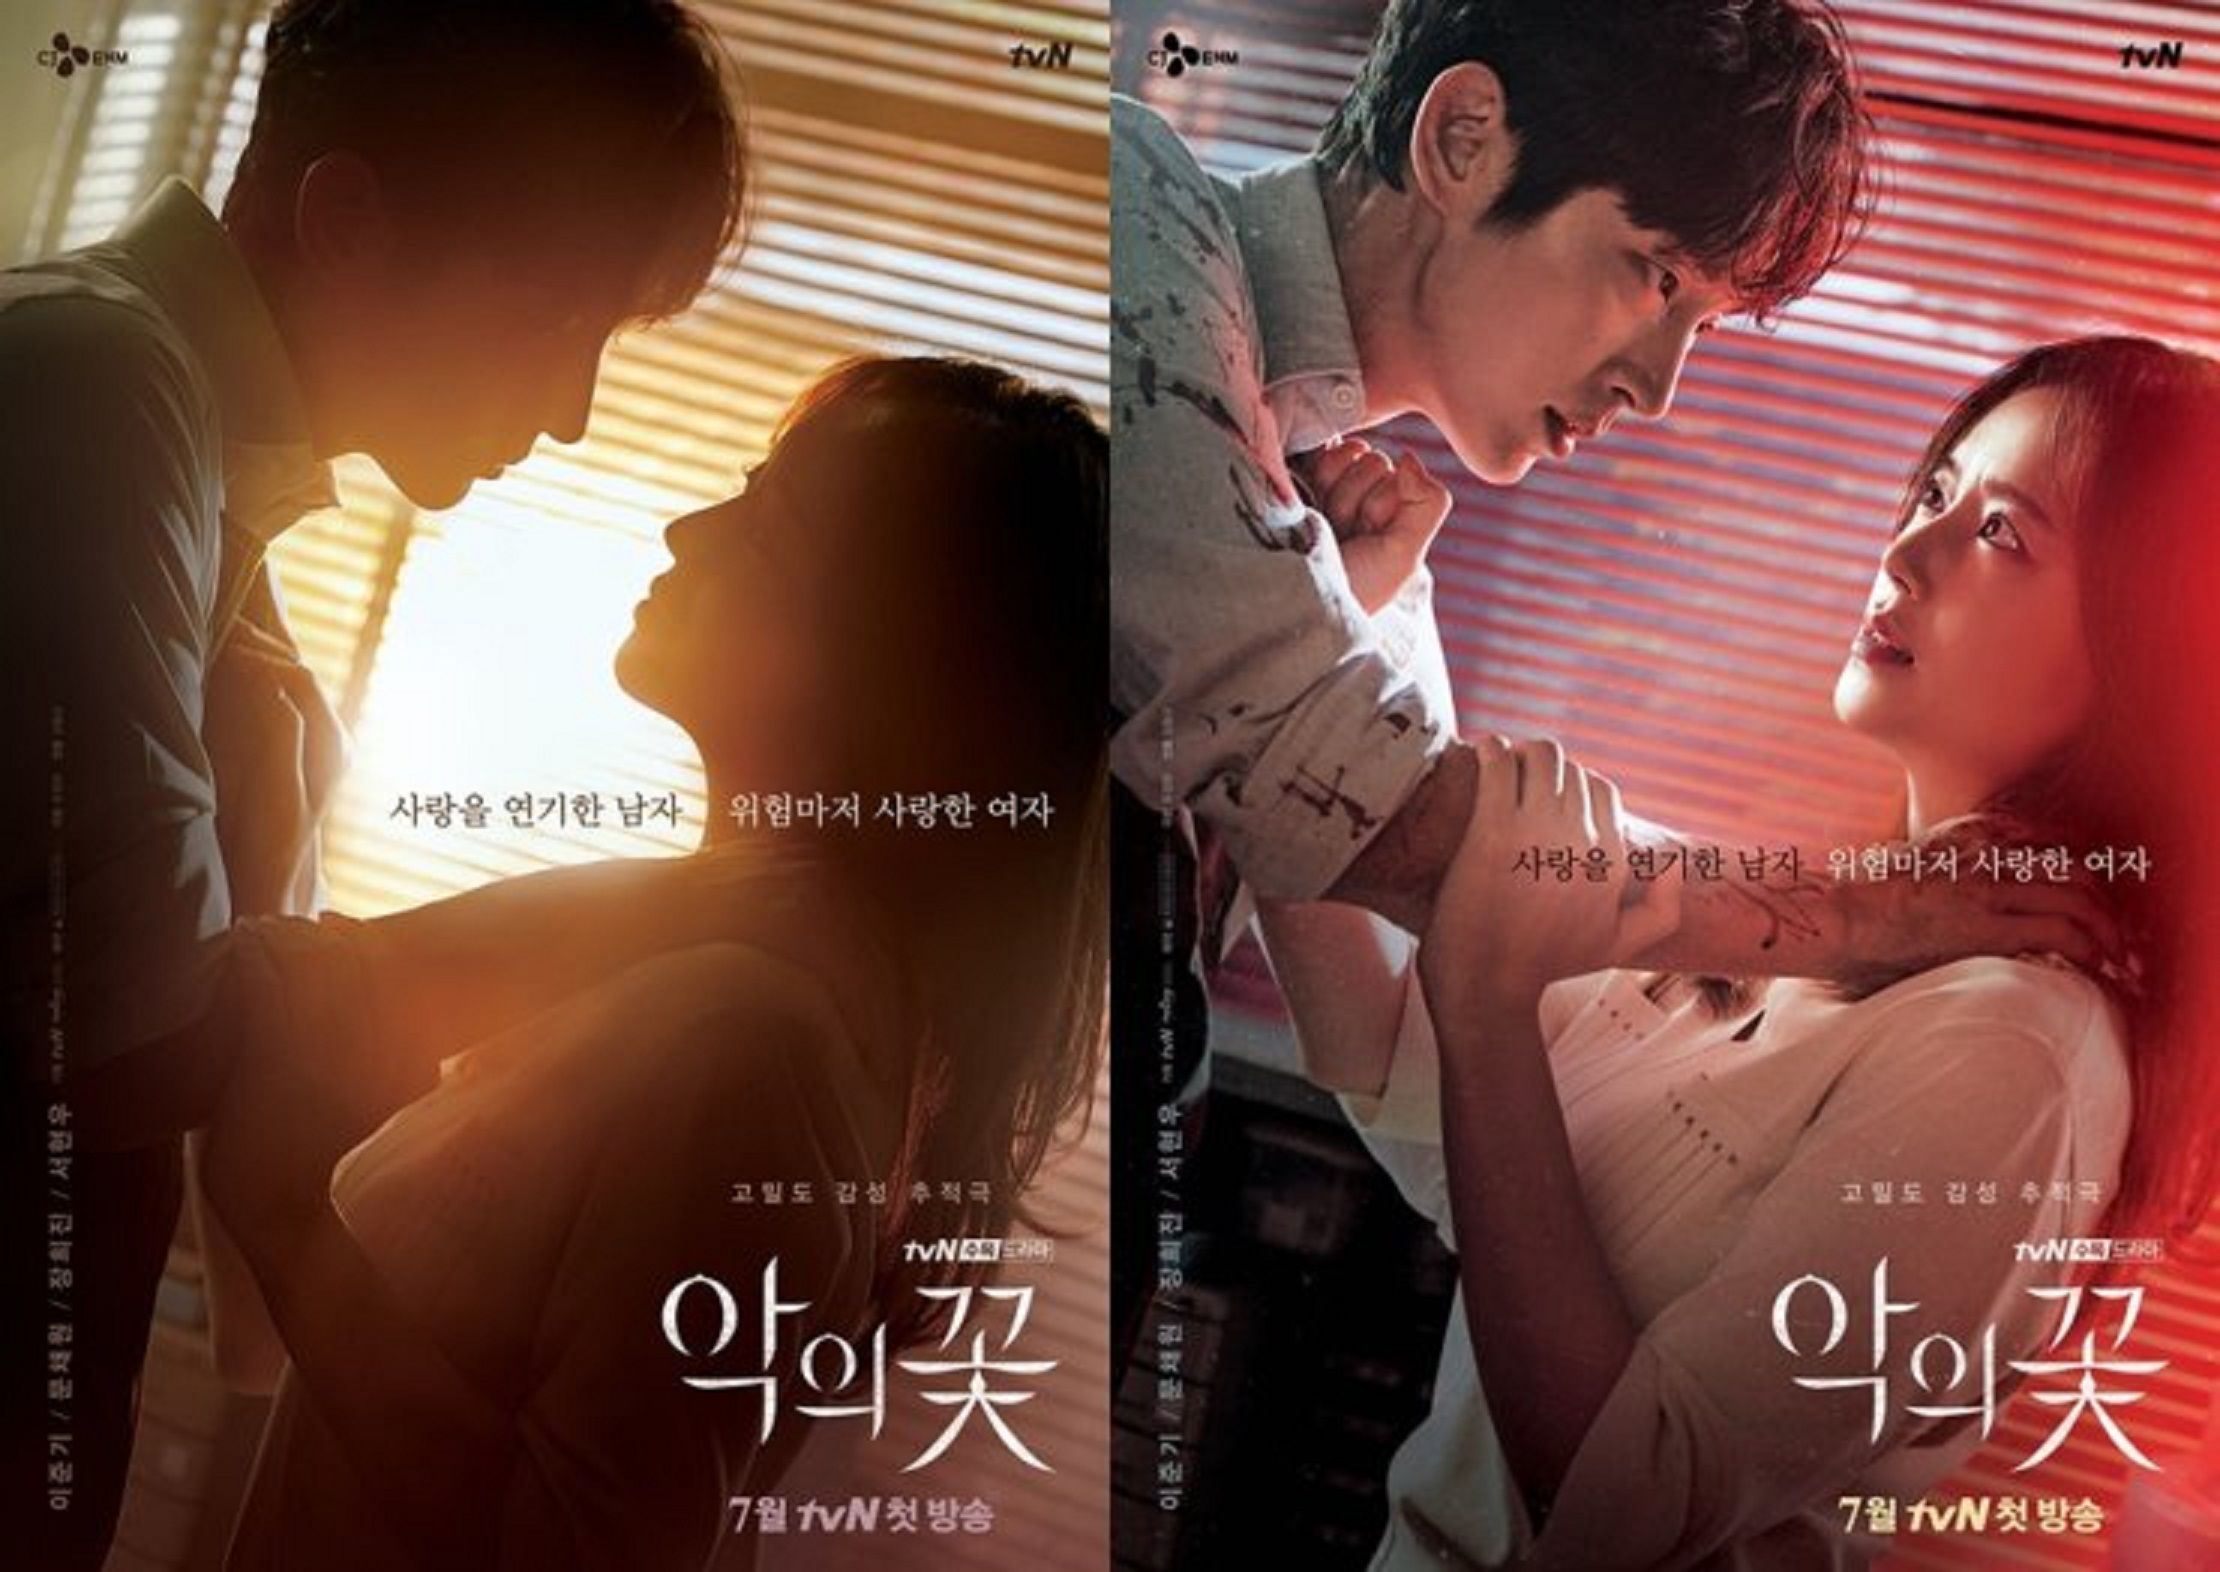 Diperankan Oleh Lee Joon Gi Berikut Sinopsis Drama Korea Flowe Of Evil Jurnal Garut